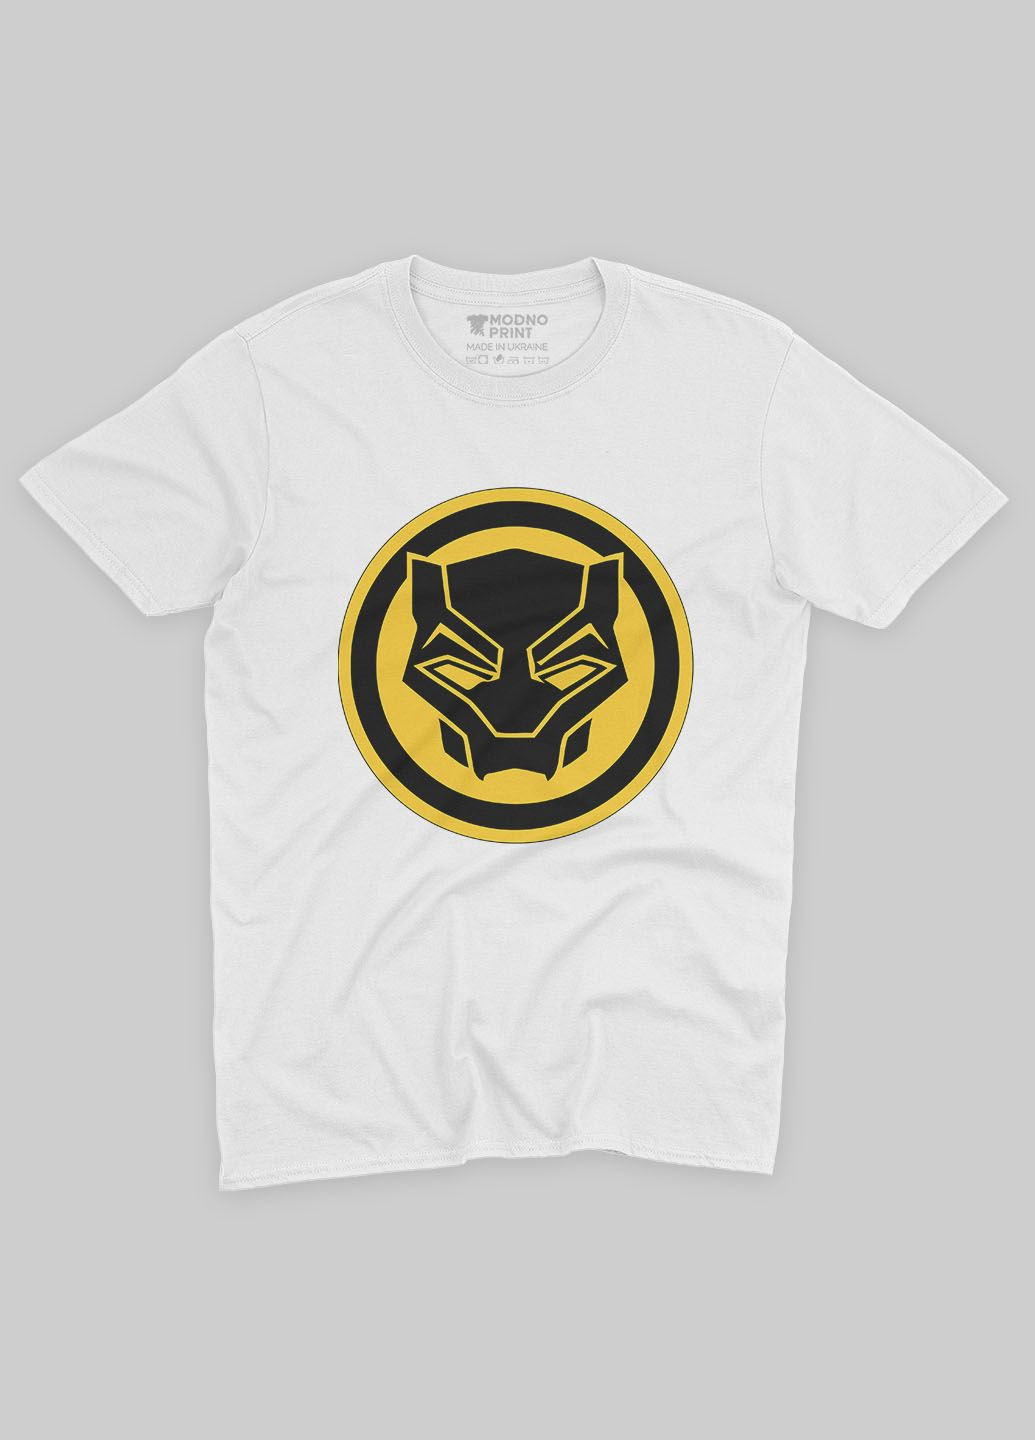 Біла демісезонна футболка для хлопчика з принтом супергероя - чорна пантера (ts001-1-whi-006-027-004-b) Modno